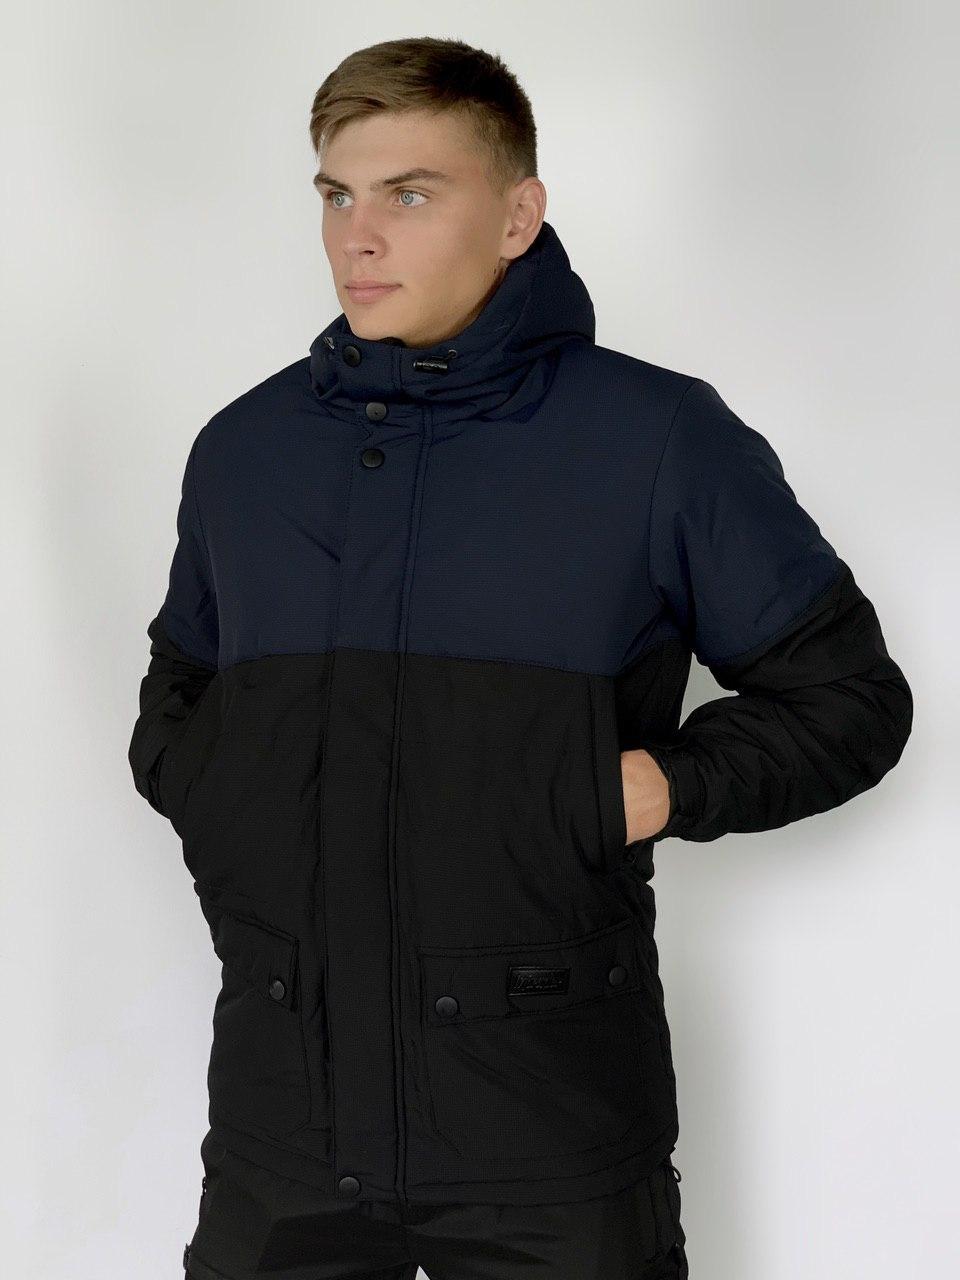 

Куртка мужская осенняя / весенняя Демисезонная Waterproof Intruder (синяя - черная)